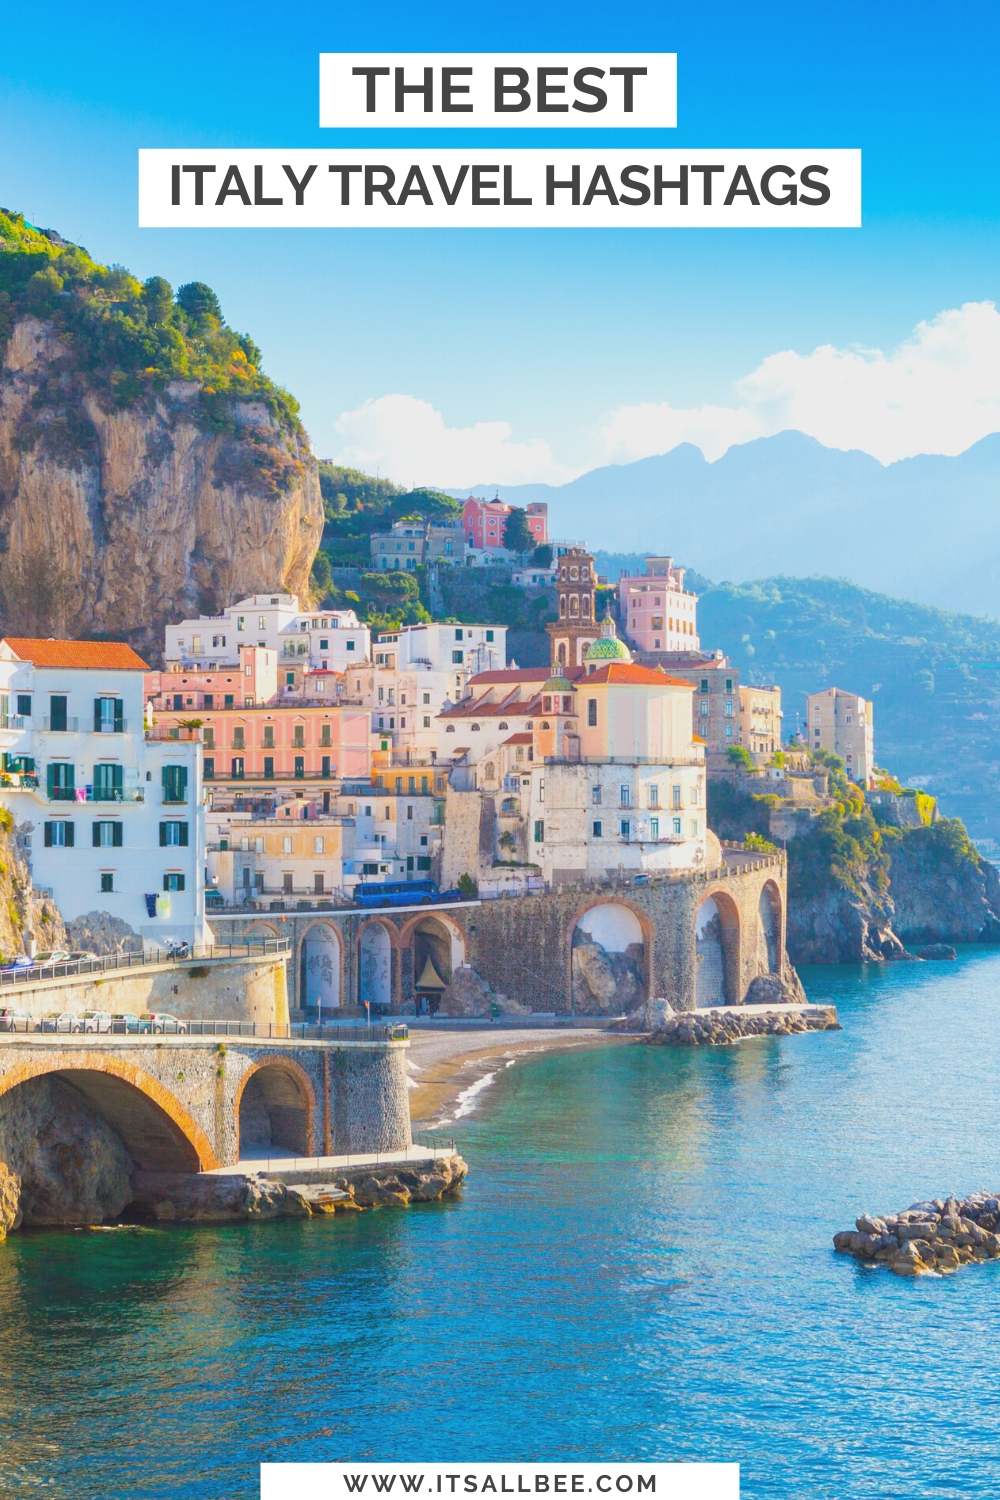 Geriausi Italijos kelioniÅ³ tinkle â€žInstagramâ€œ tinklaraÅ¡Ä�iai